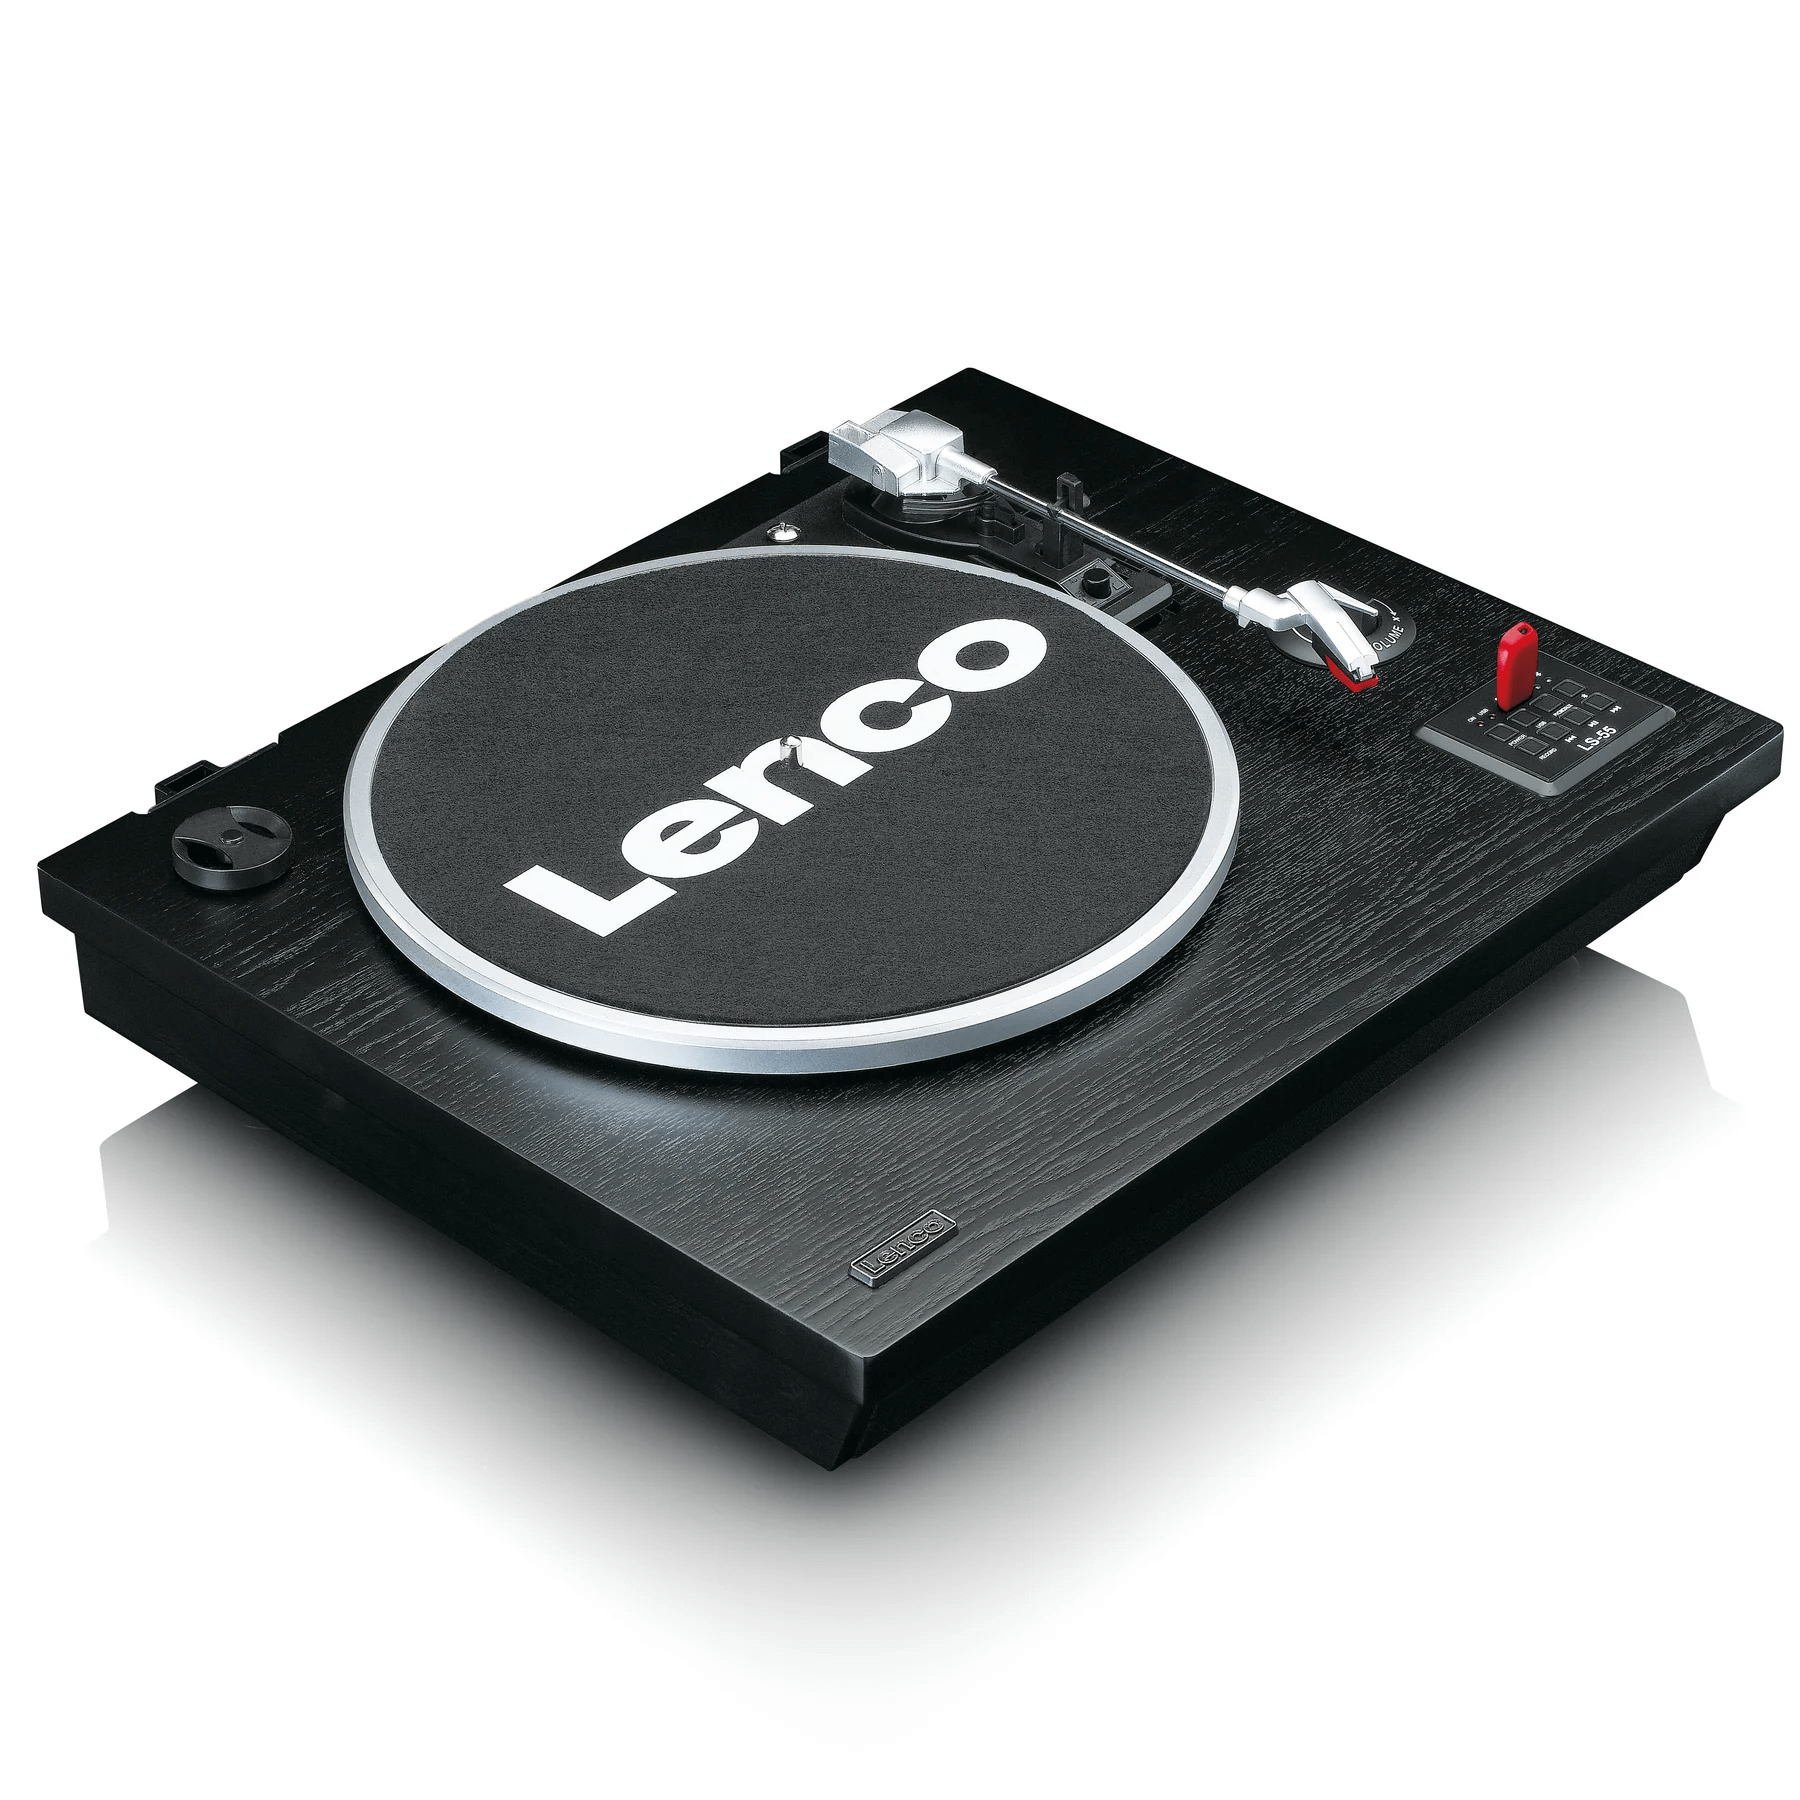 LENCO Виниловый проигрыватель LS-55 Виниловый проигрыватель со встроенными динамиками, USB-плеером с возможностью оцифровки, функцией Bluetooth